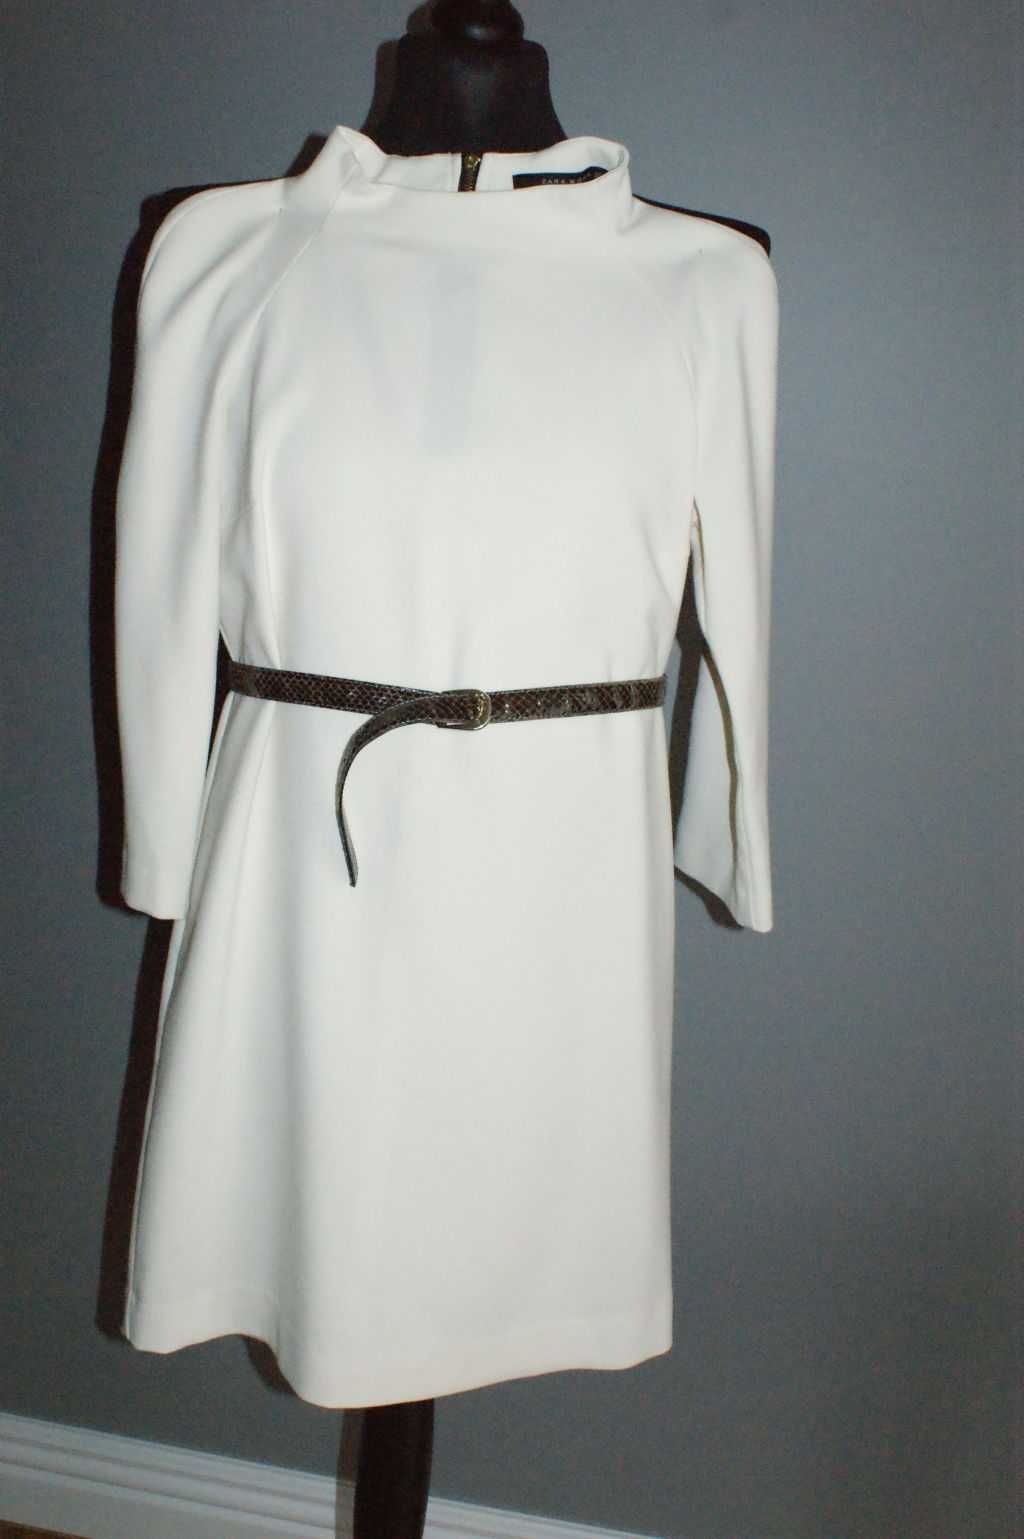 Sukienka mini elegancka ecru biała XS 34 lata 60. Zara